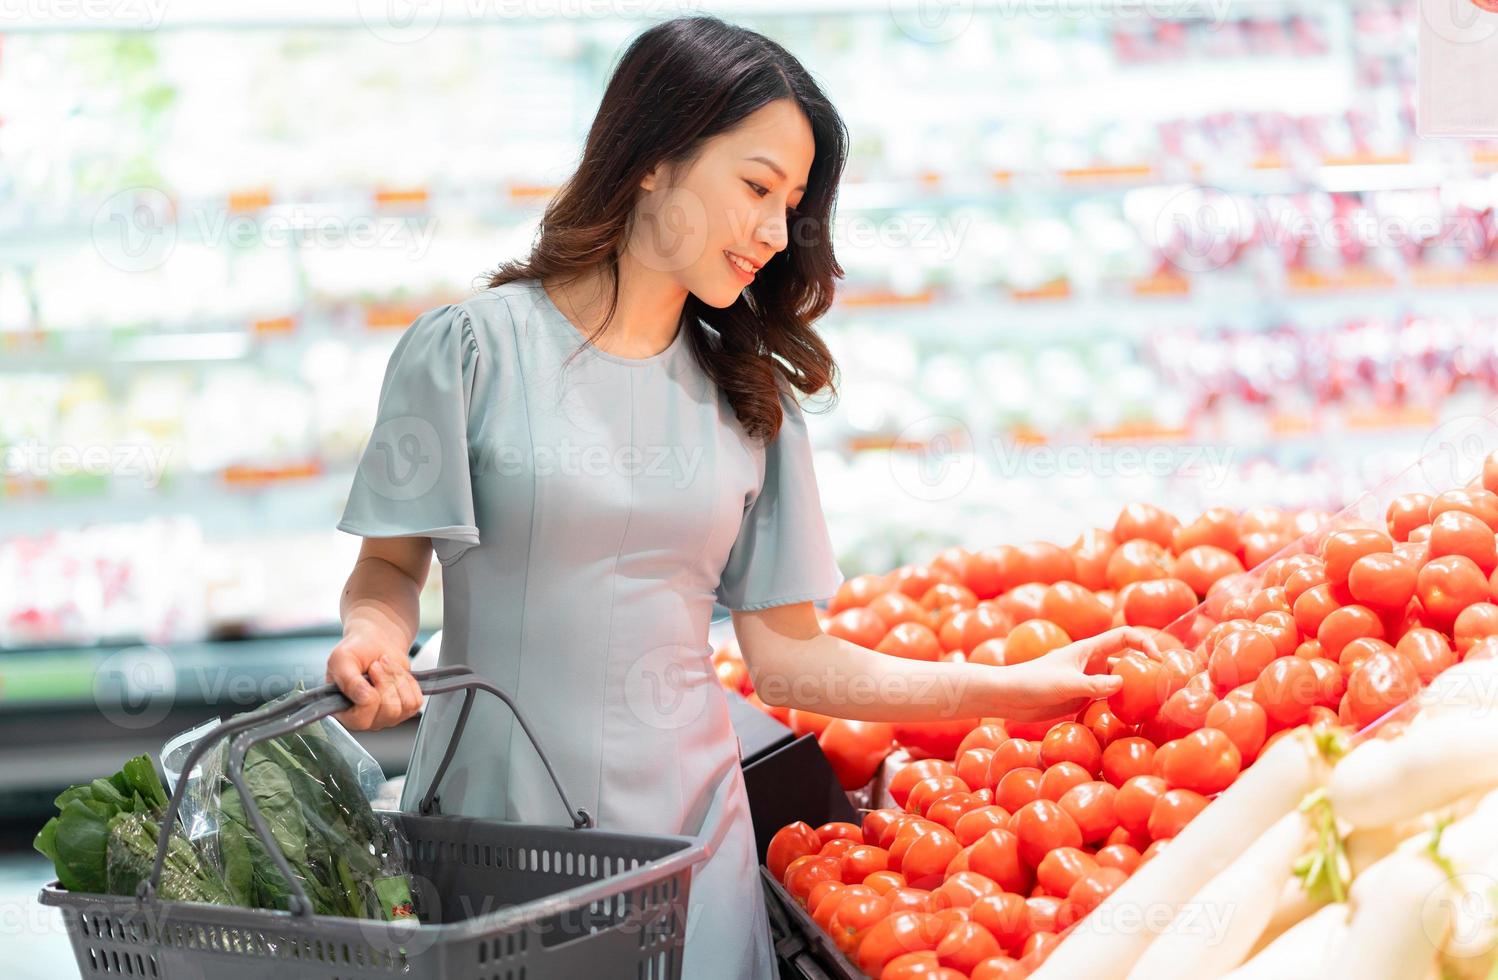 a jovem está escolhendo comprar legumes no supermercado foto